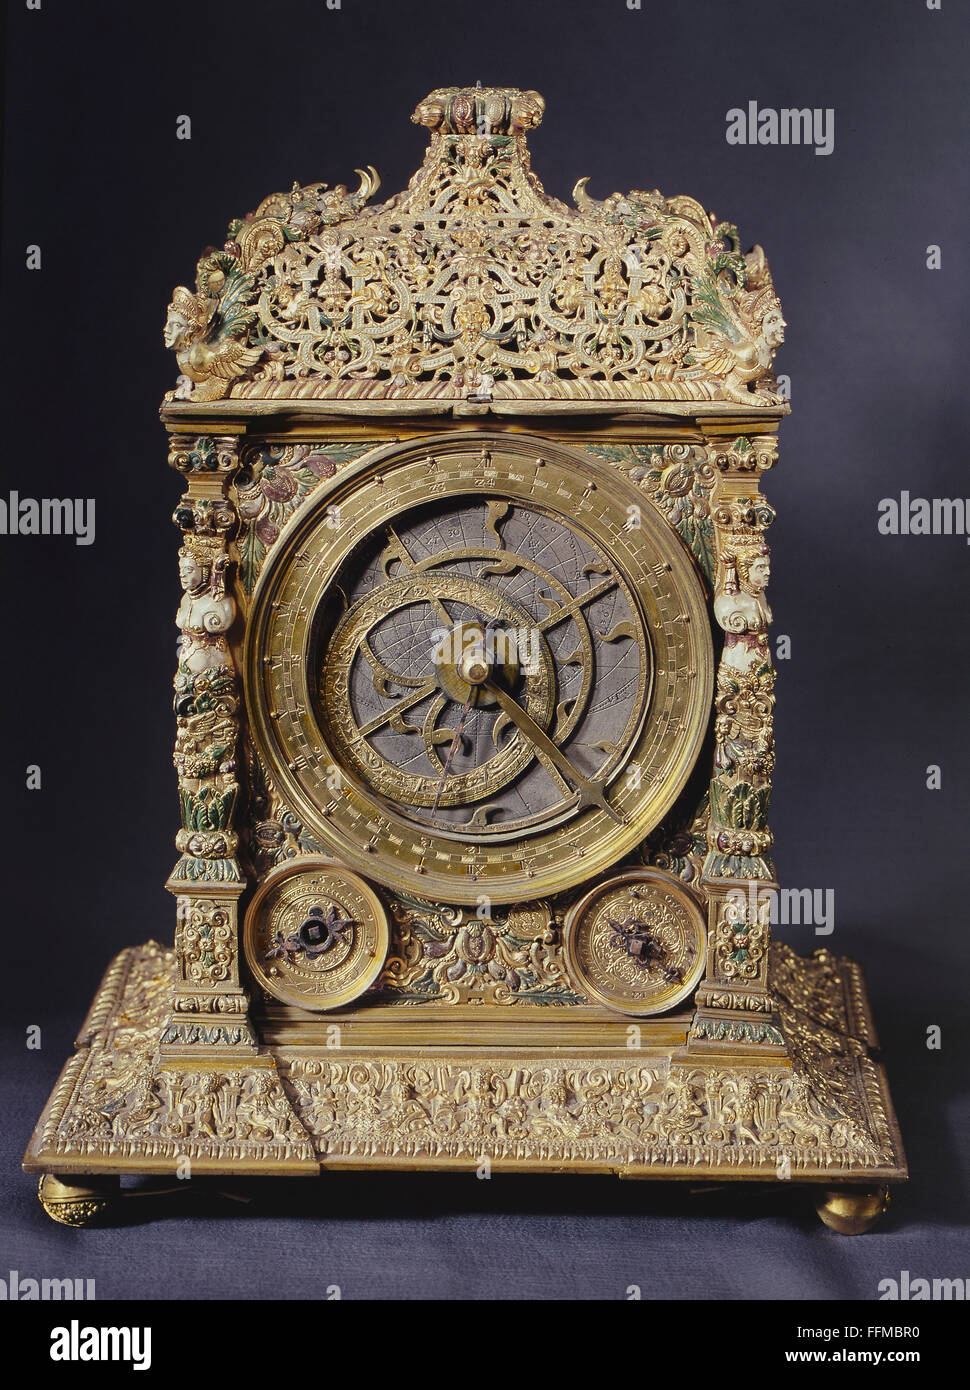 Orologi, orologio a staffa, bronzo, placcato oro, dipinto, Augusta, circa 1570 / 1580, diritti aggiuntivi-clearences-non disponibile Foto Stock